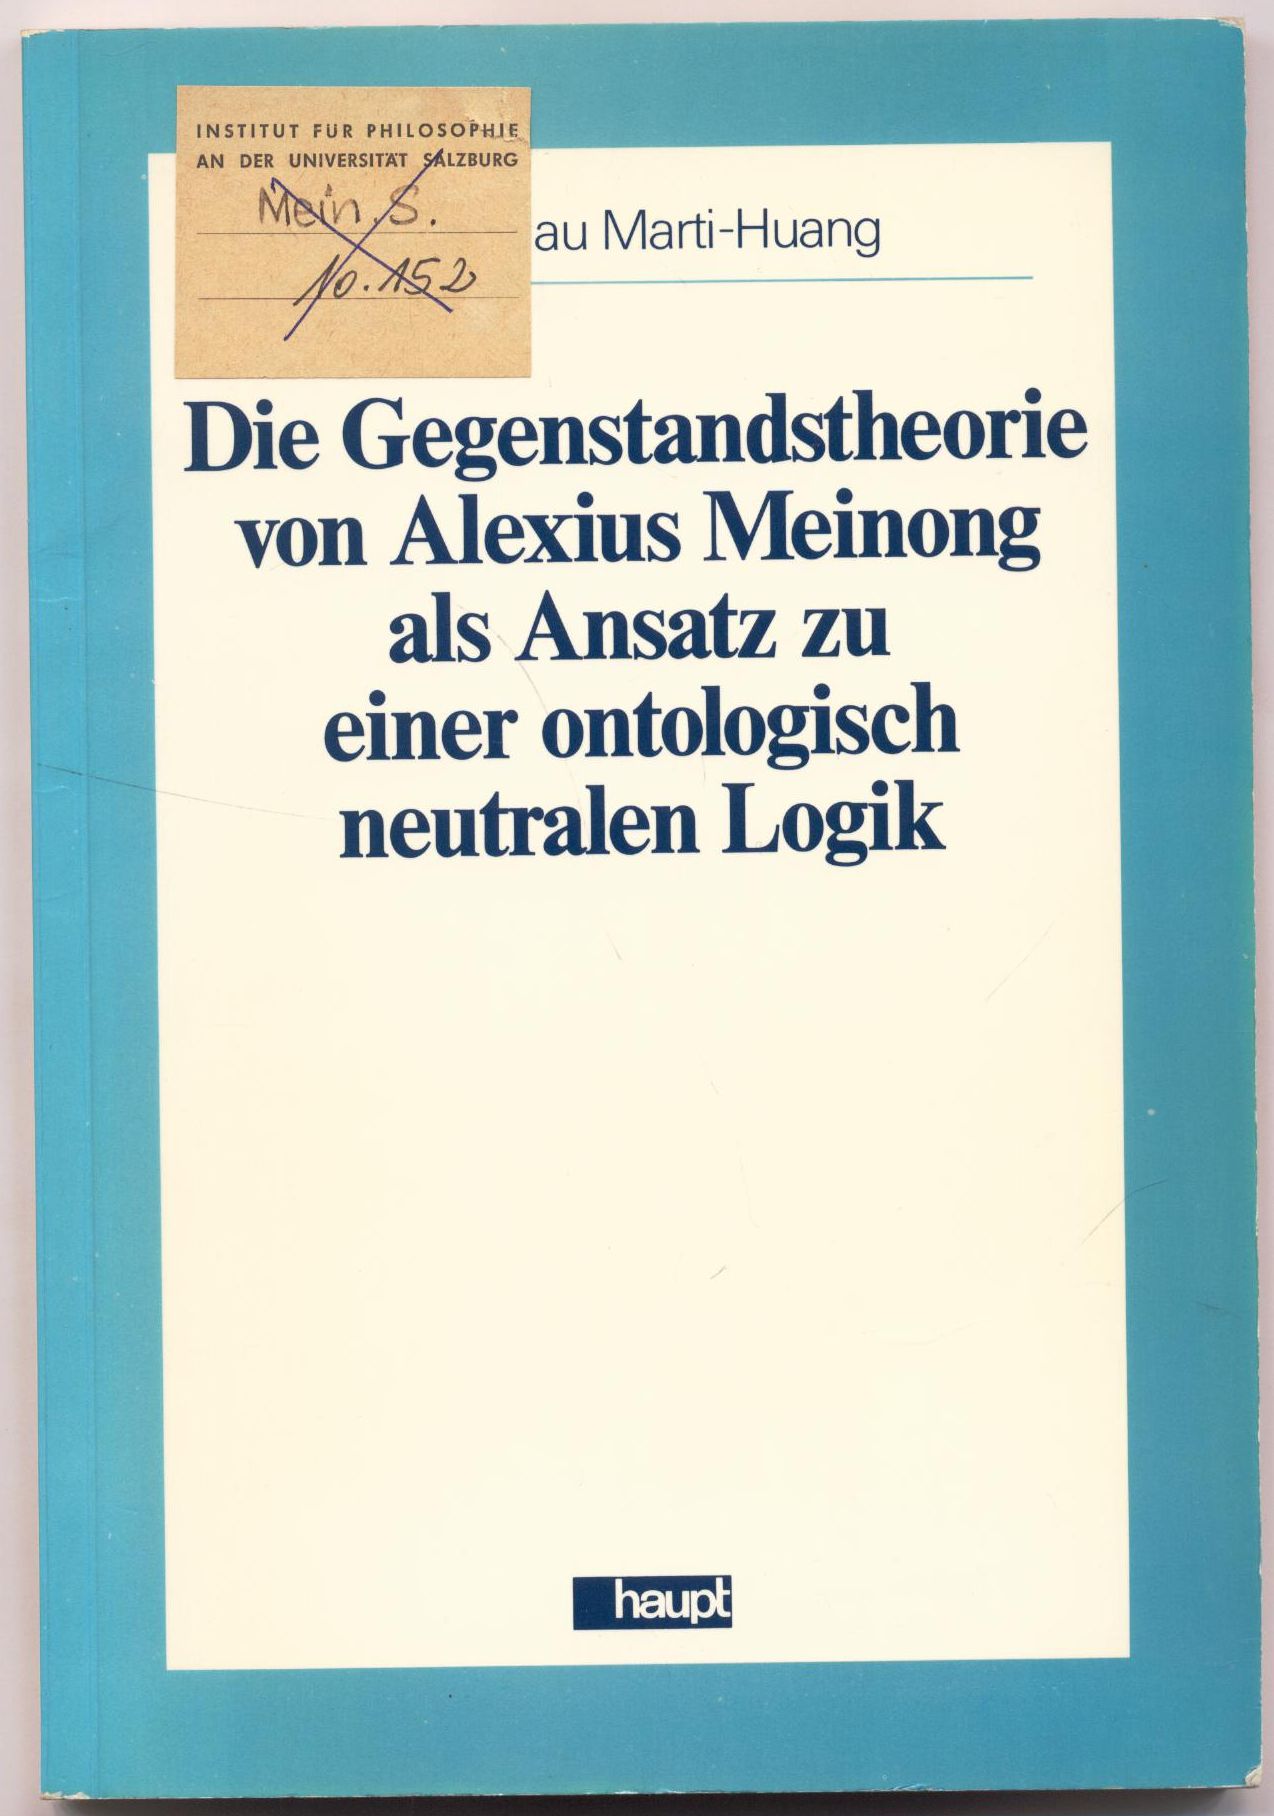 Die Gegenstandstheorie von Alexius Meinong als Ansatz zu einer ontologisch neutralen Logik - Marti-Huang, Duen Jau